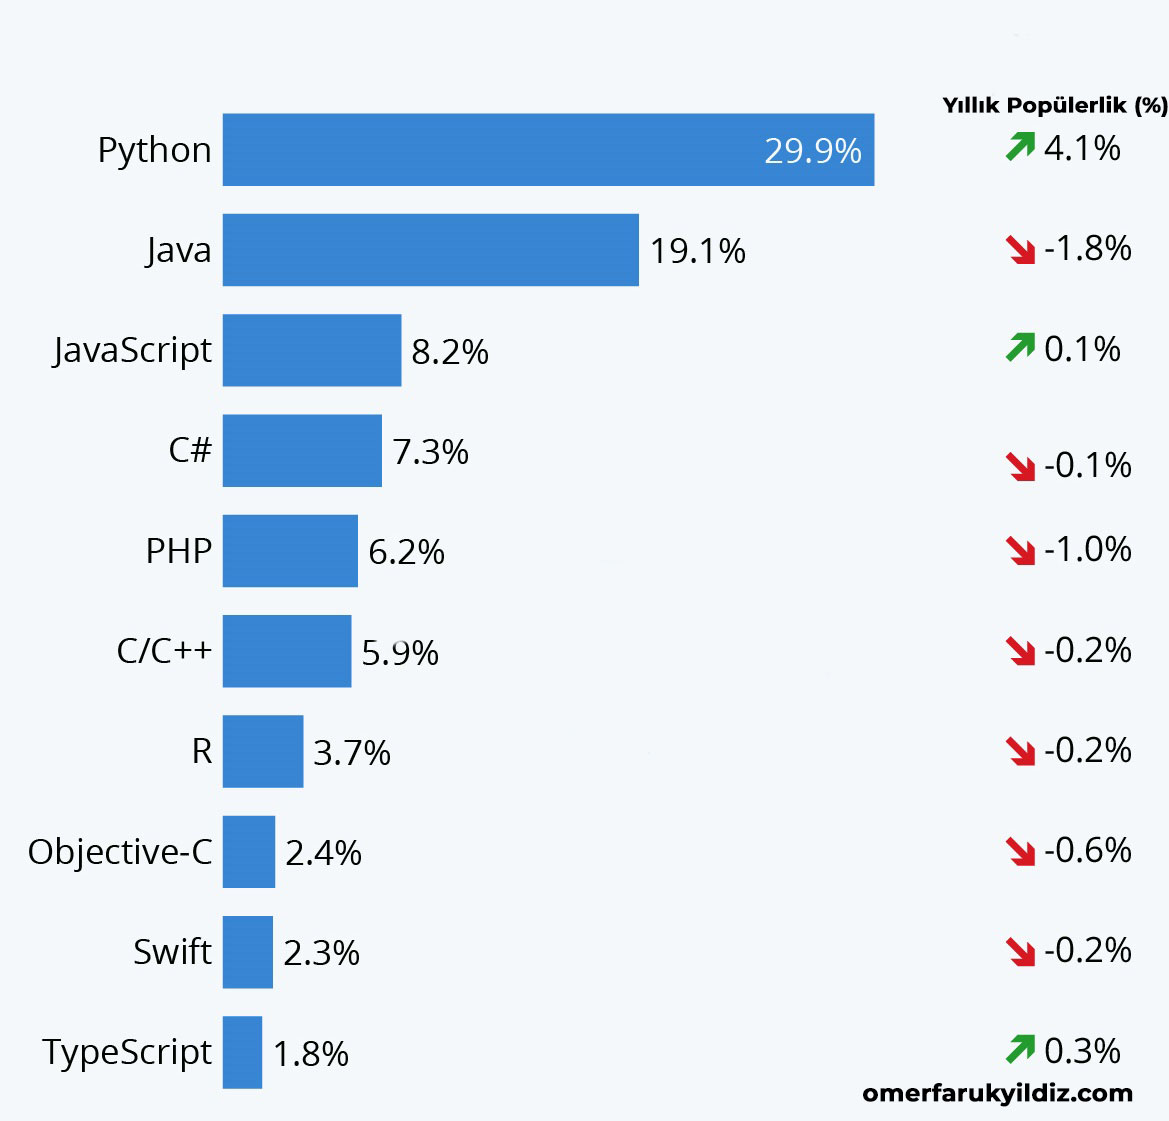 2020 Yılında Python Popülerliği